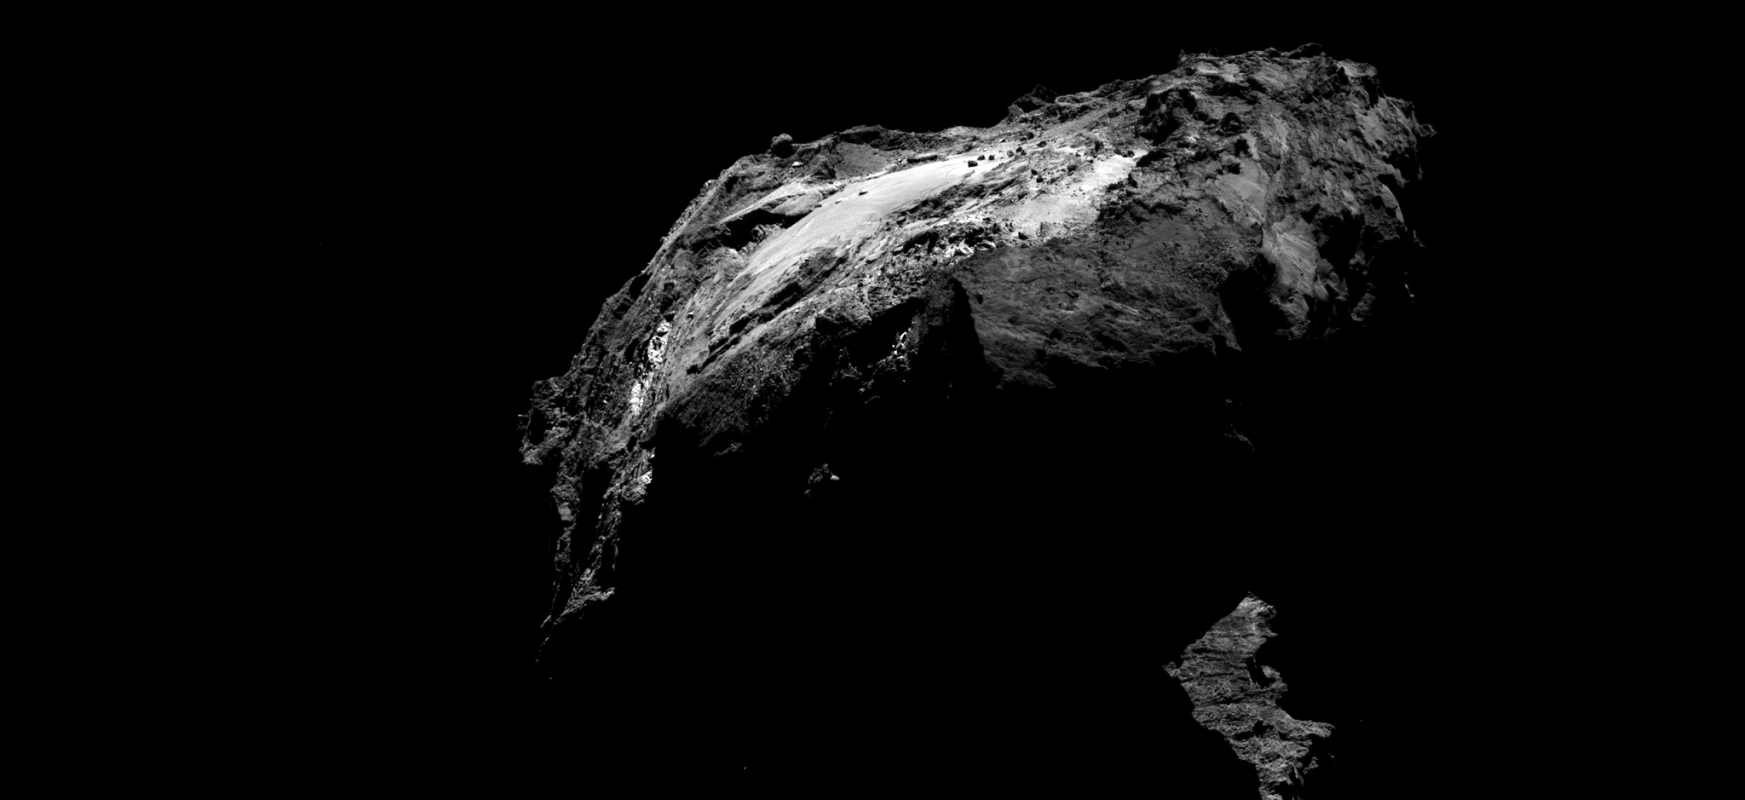 Kometa 67Pan ezkutatutako nitrogenoak eguzki sistemaren puzzleak konpon ditzake
